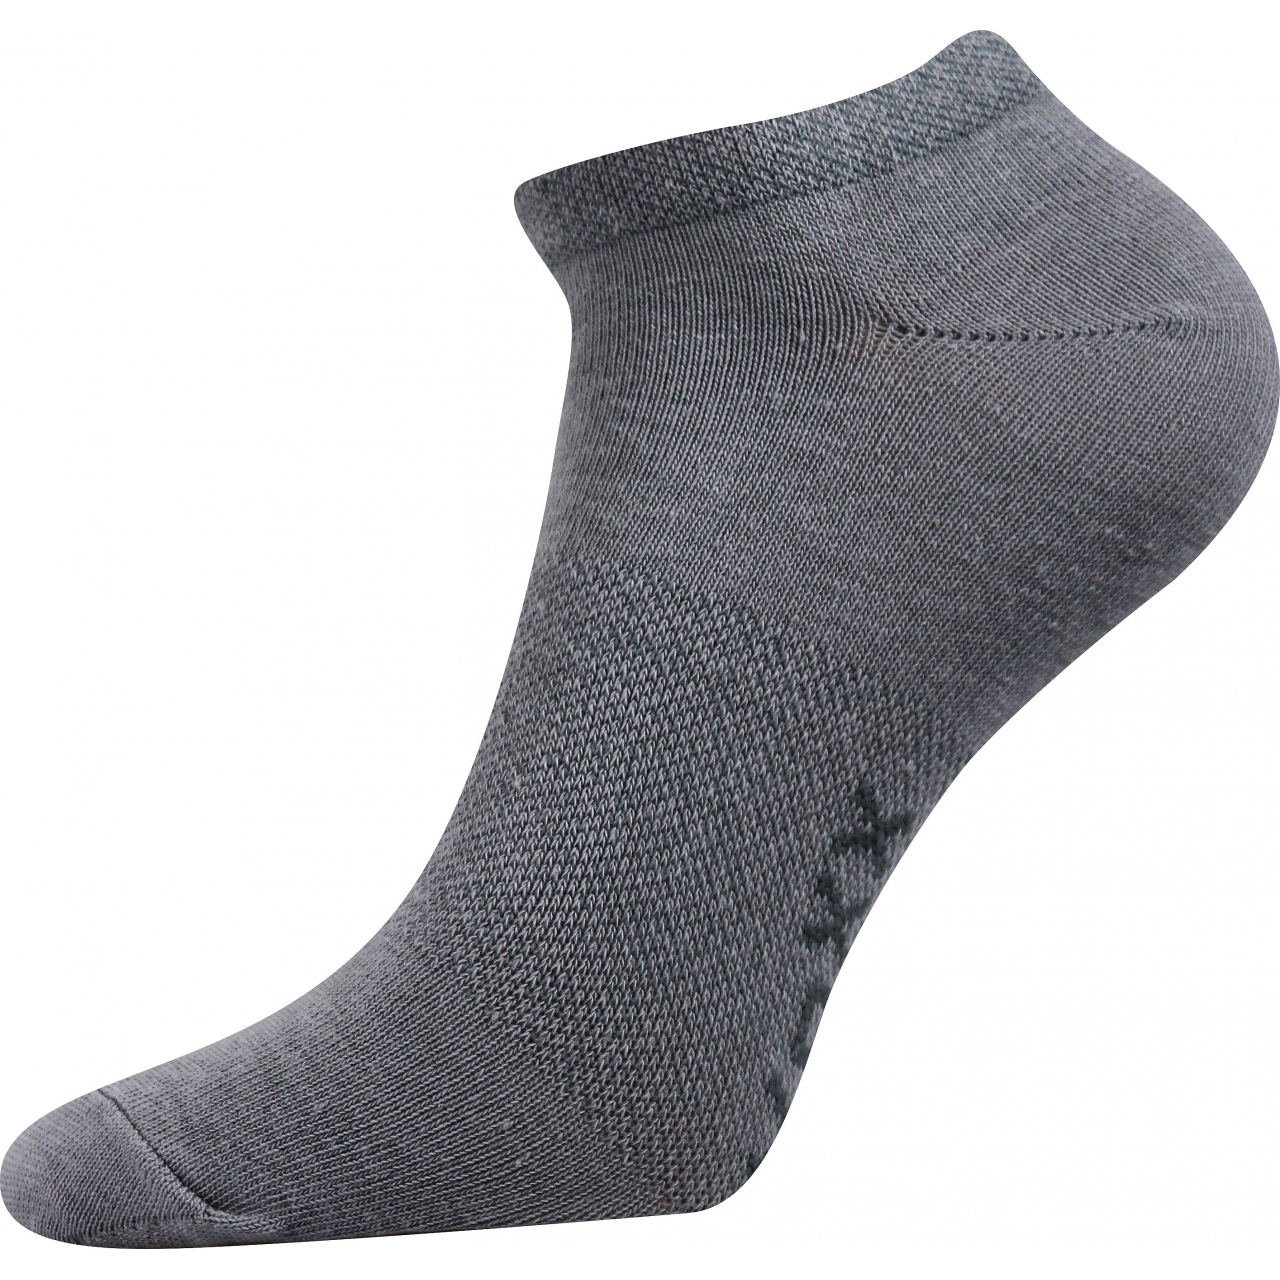 Ponožky unisex Voxx Rex 00 - světle šedé, 43-46